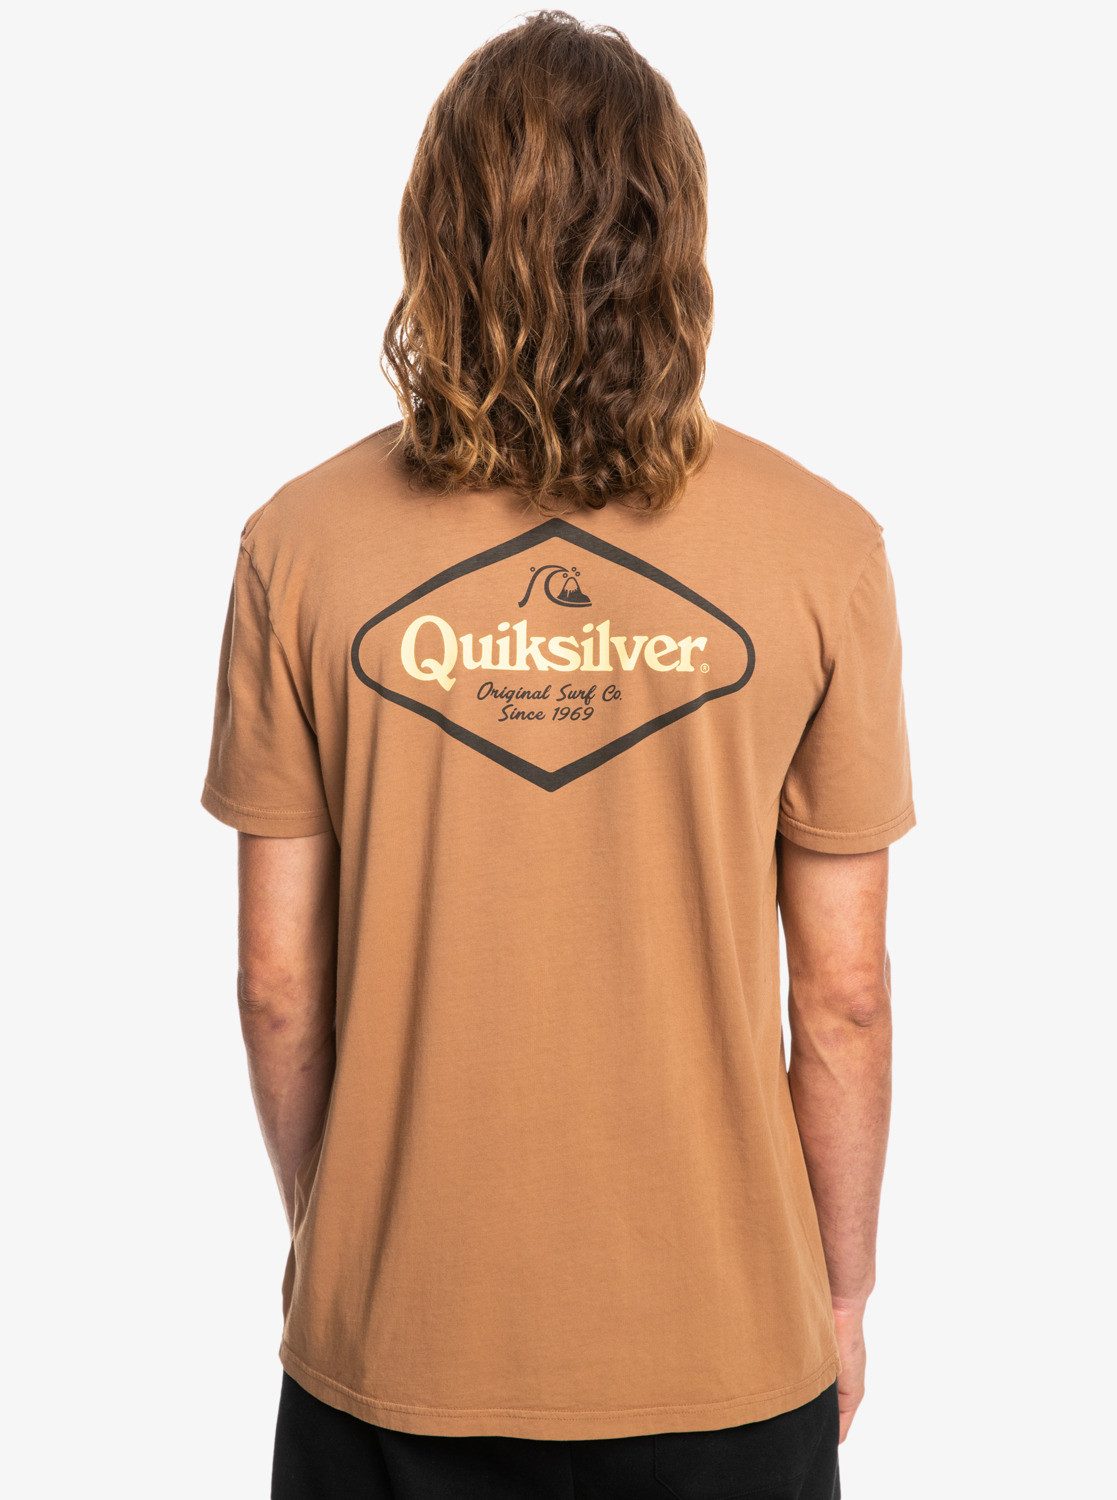 Stir Quiksilver Up It T-Shirt